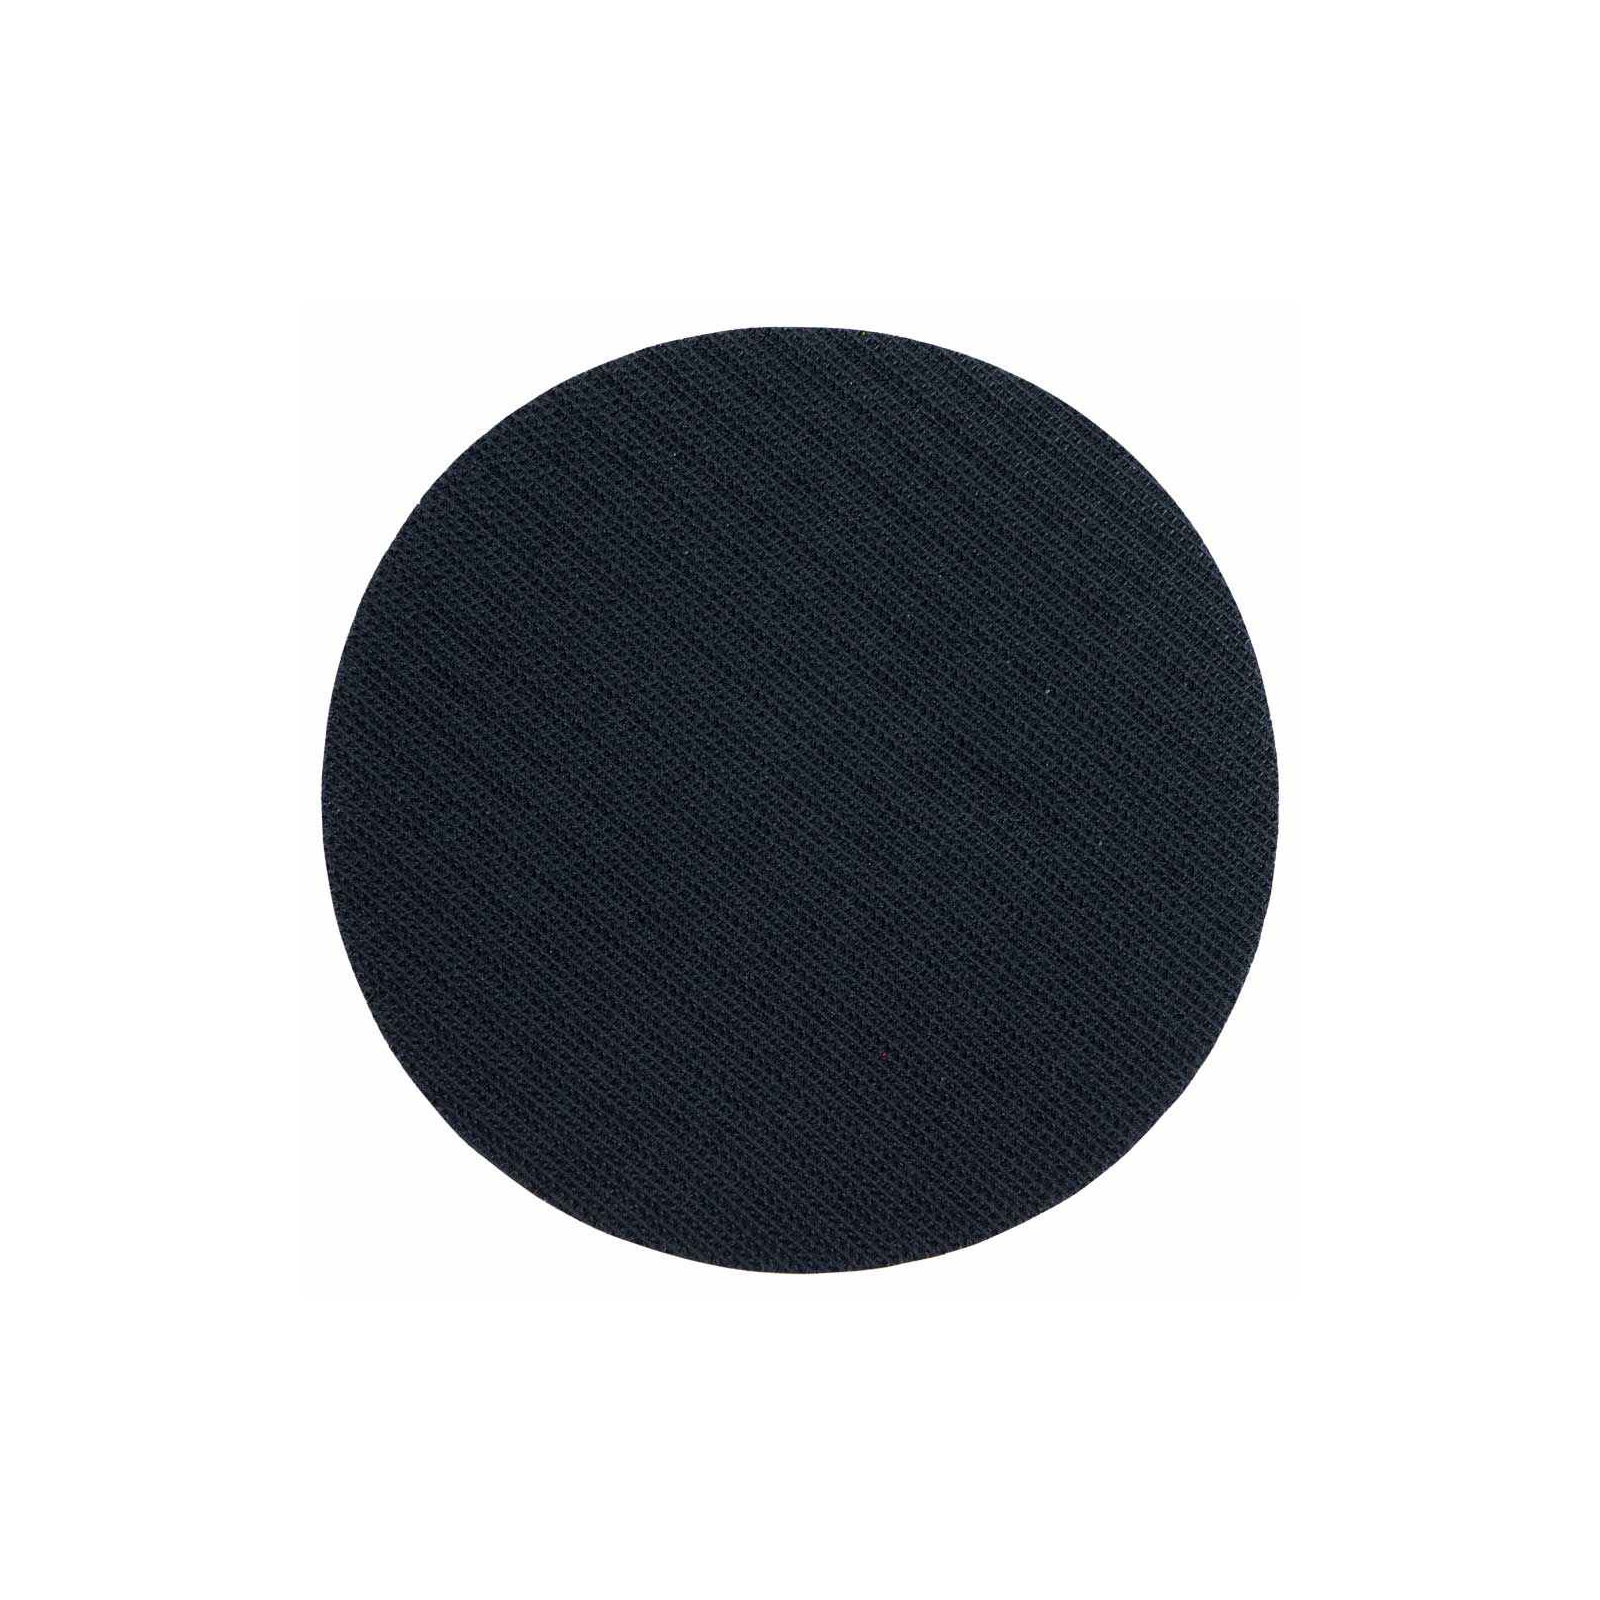 Круг зачистной Sigma шлифовальный мягкий 115мм с липучкой (9182121) изображение 3